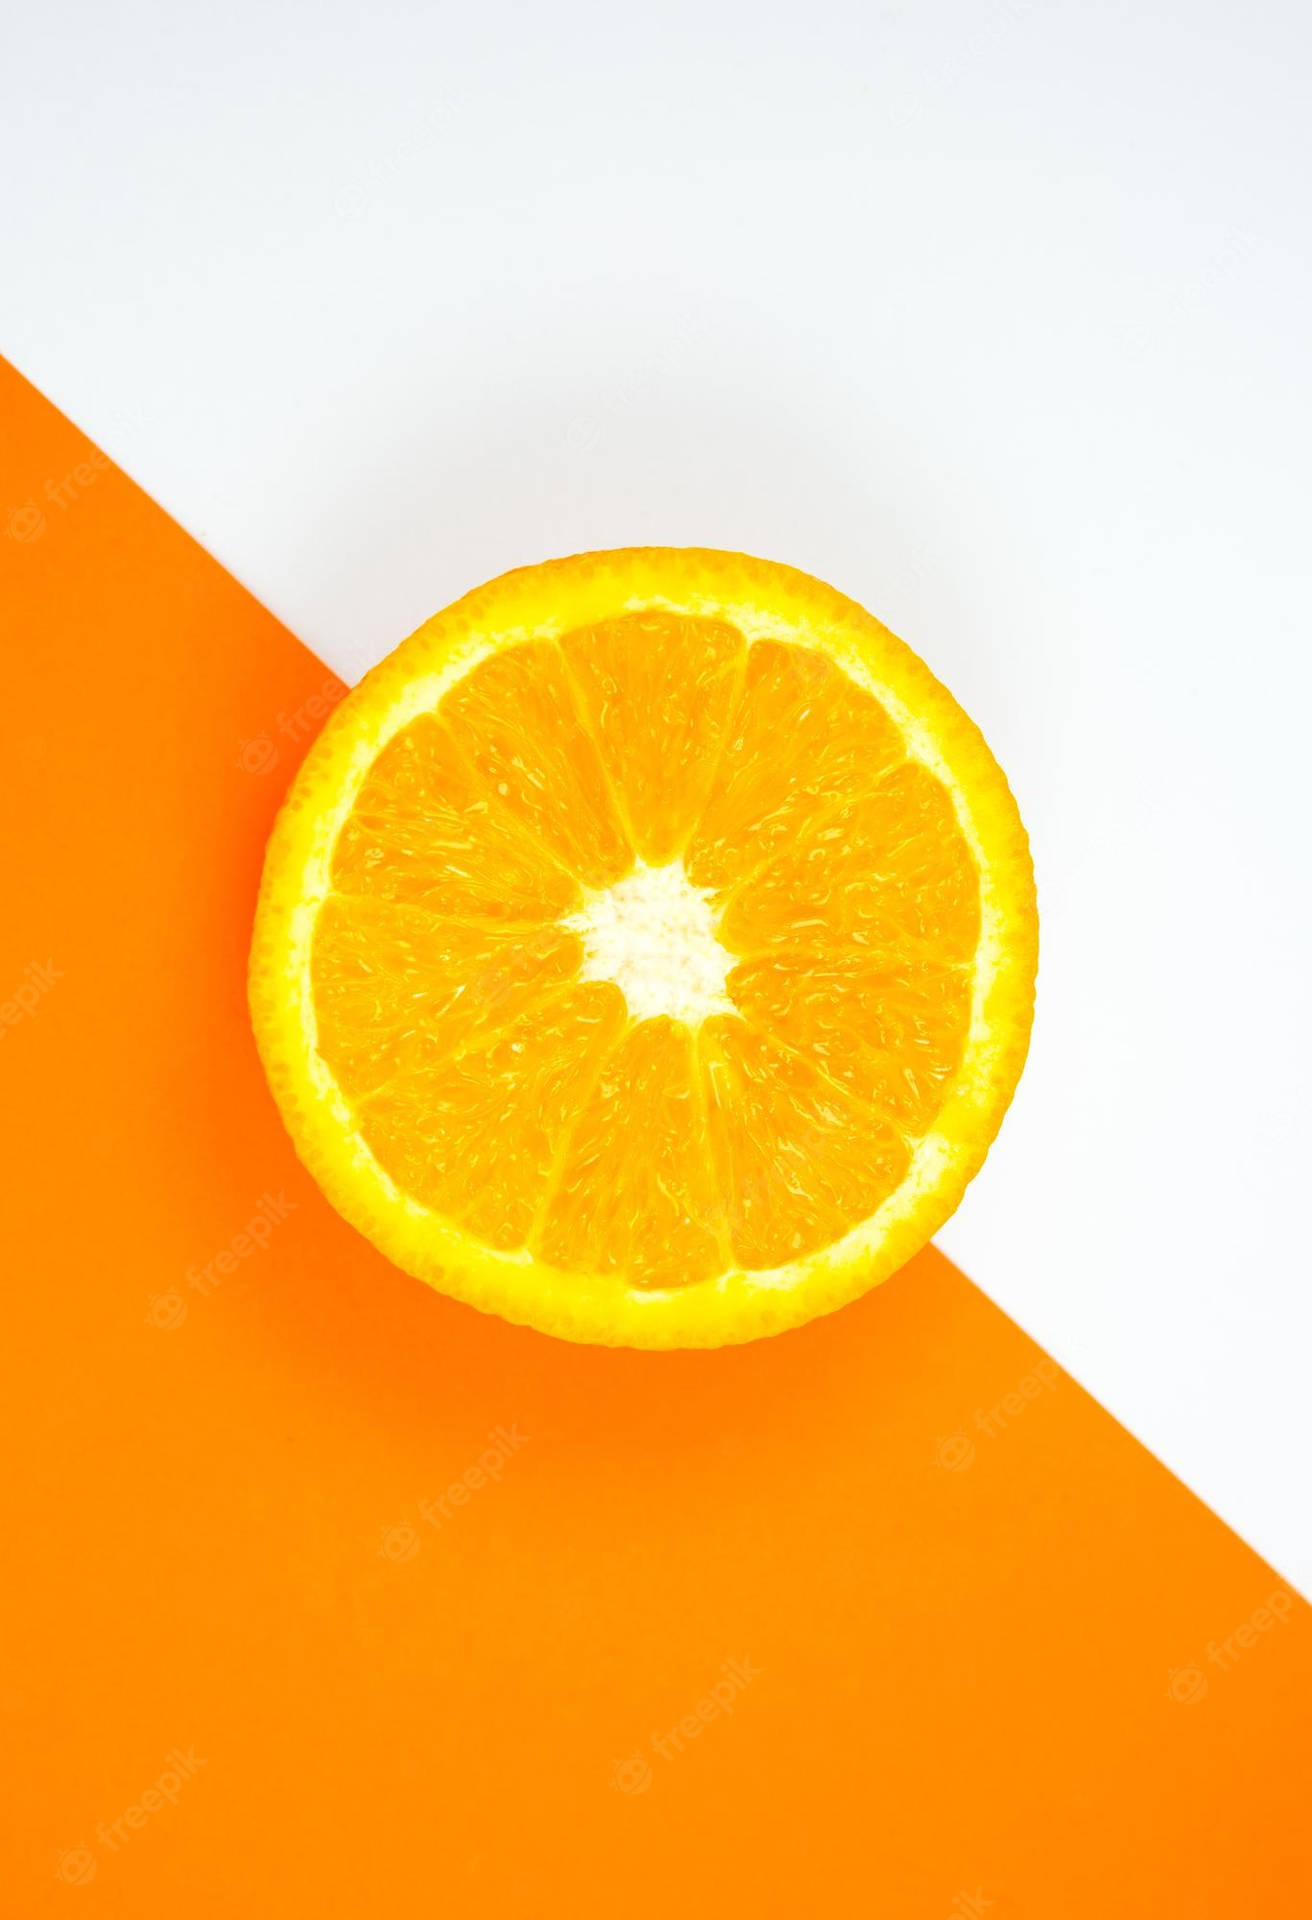 Arancionebrillante E Solido - Un Modo Perfetto Per Iniziare La Giornata. Sfondo